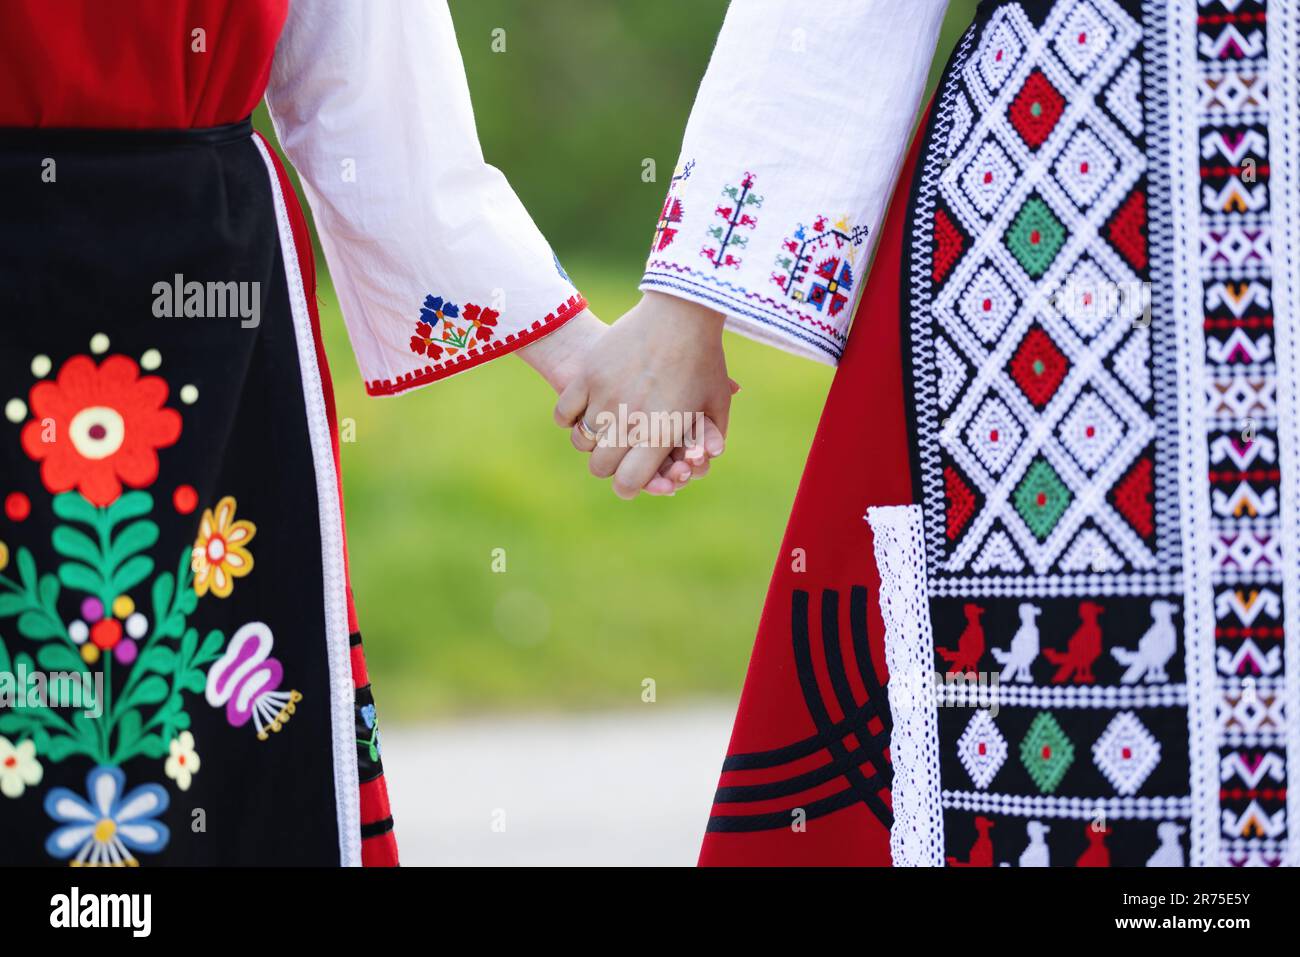 Mädchen in traditionellen bulgarischen ethnischen Kostümen mit folkloristischer Stickerei, die Händchen hält. Der Geist Bulgariens - Kultur, Geschichte und Traditionen. Stockfoto